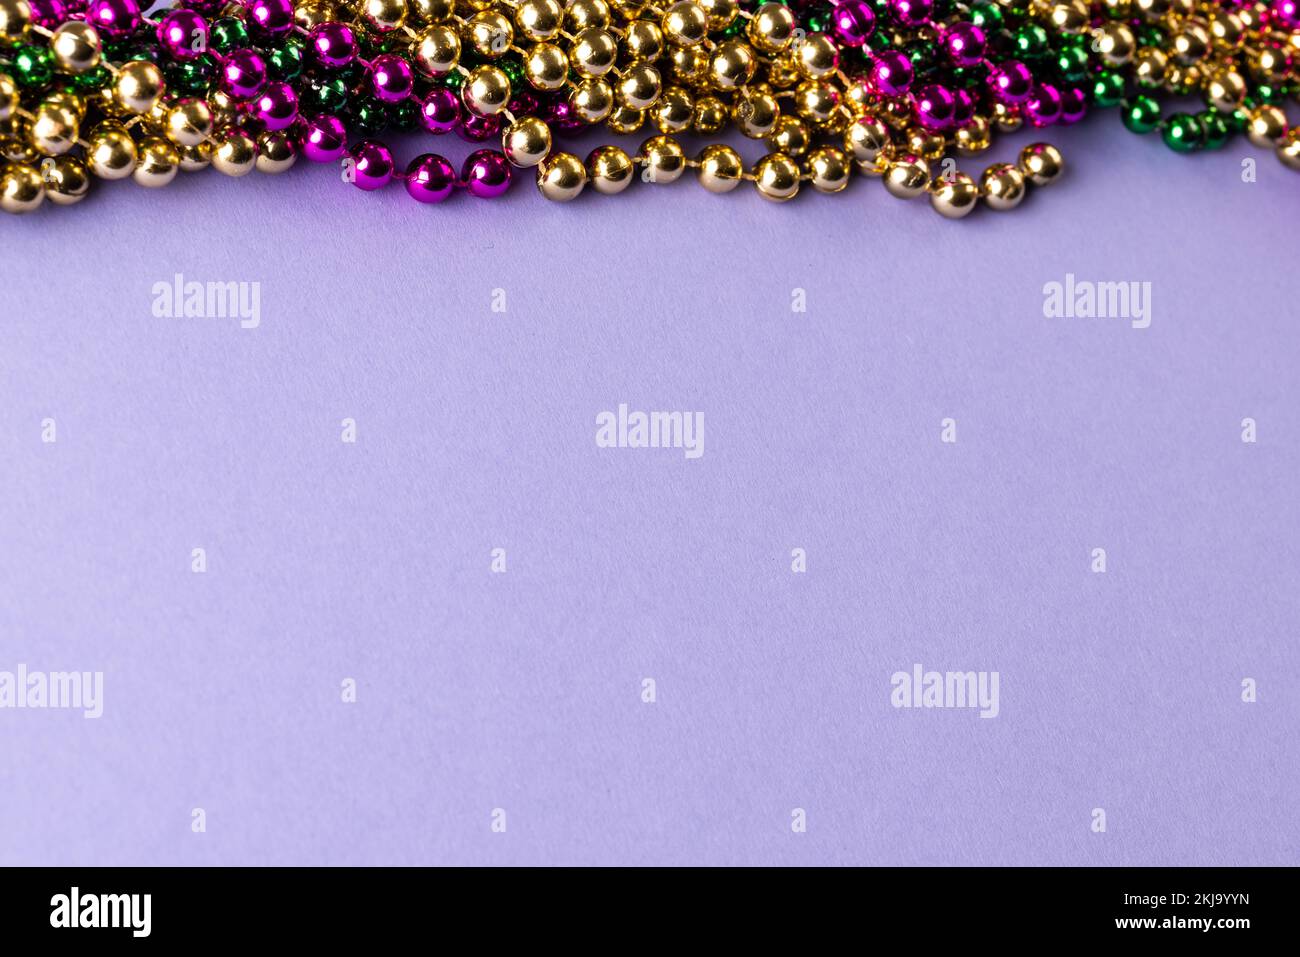 Composition de perles mardi gras colorées sur fond lilas avec espace de copie Banque D'Images